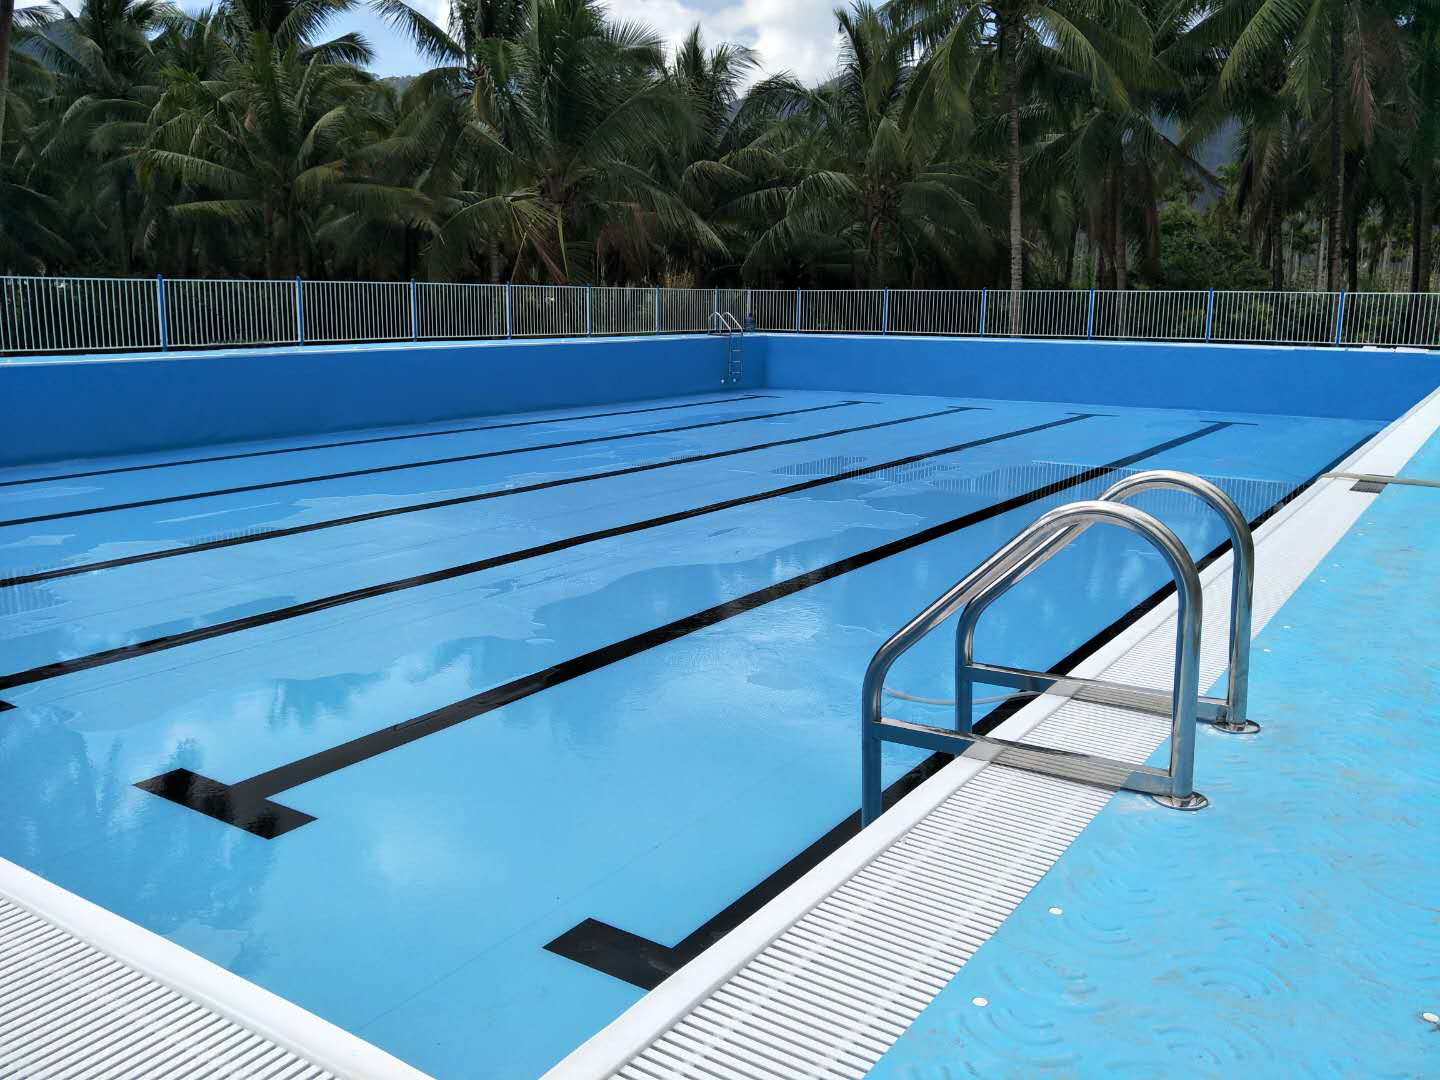 校园游泳池- 新闻资讯 -盛邦泳池官网